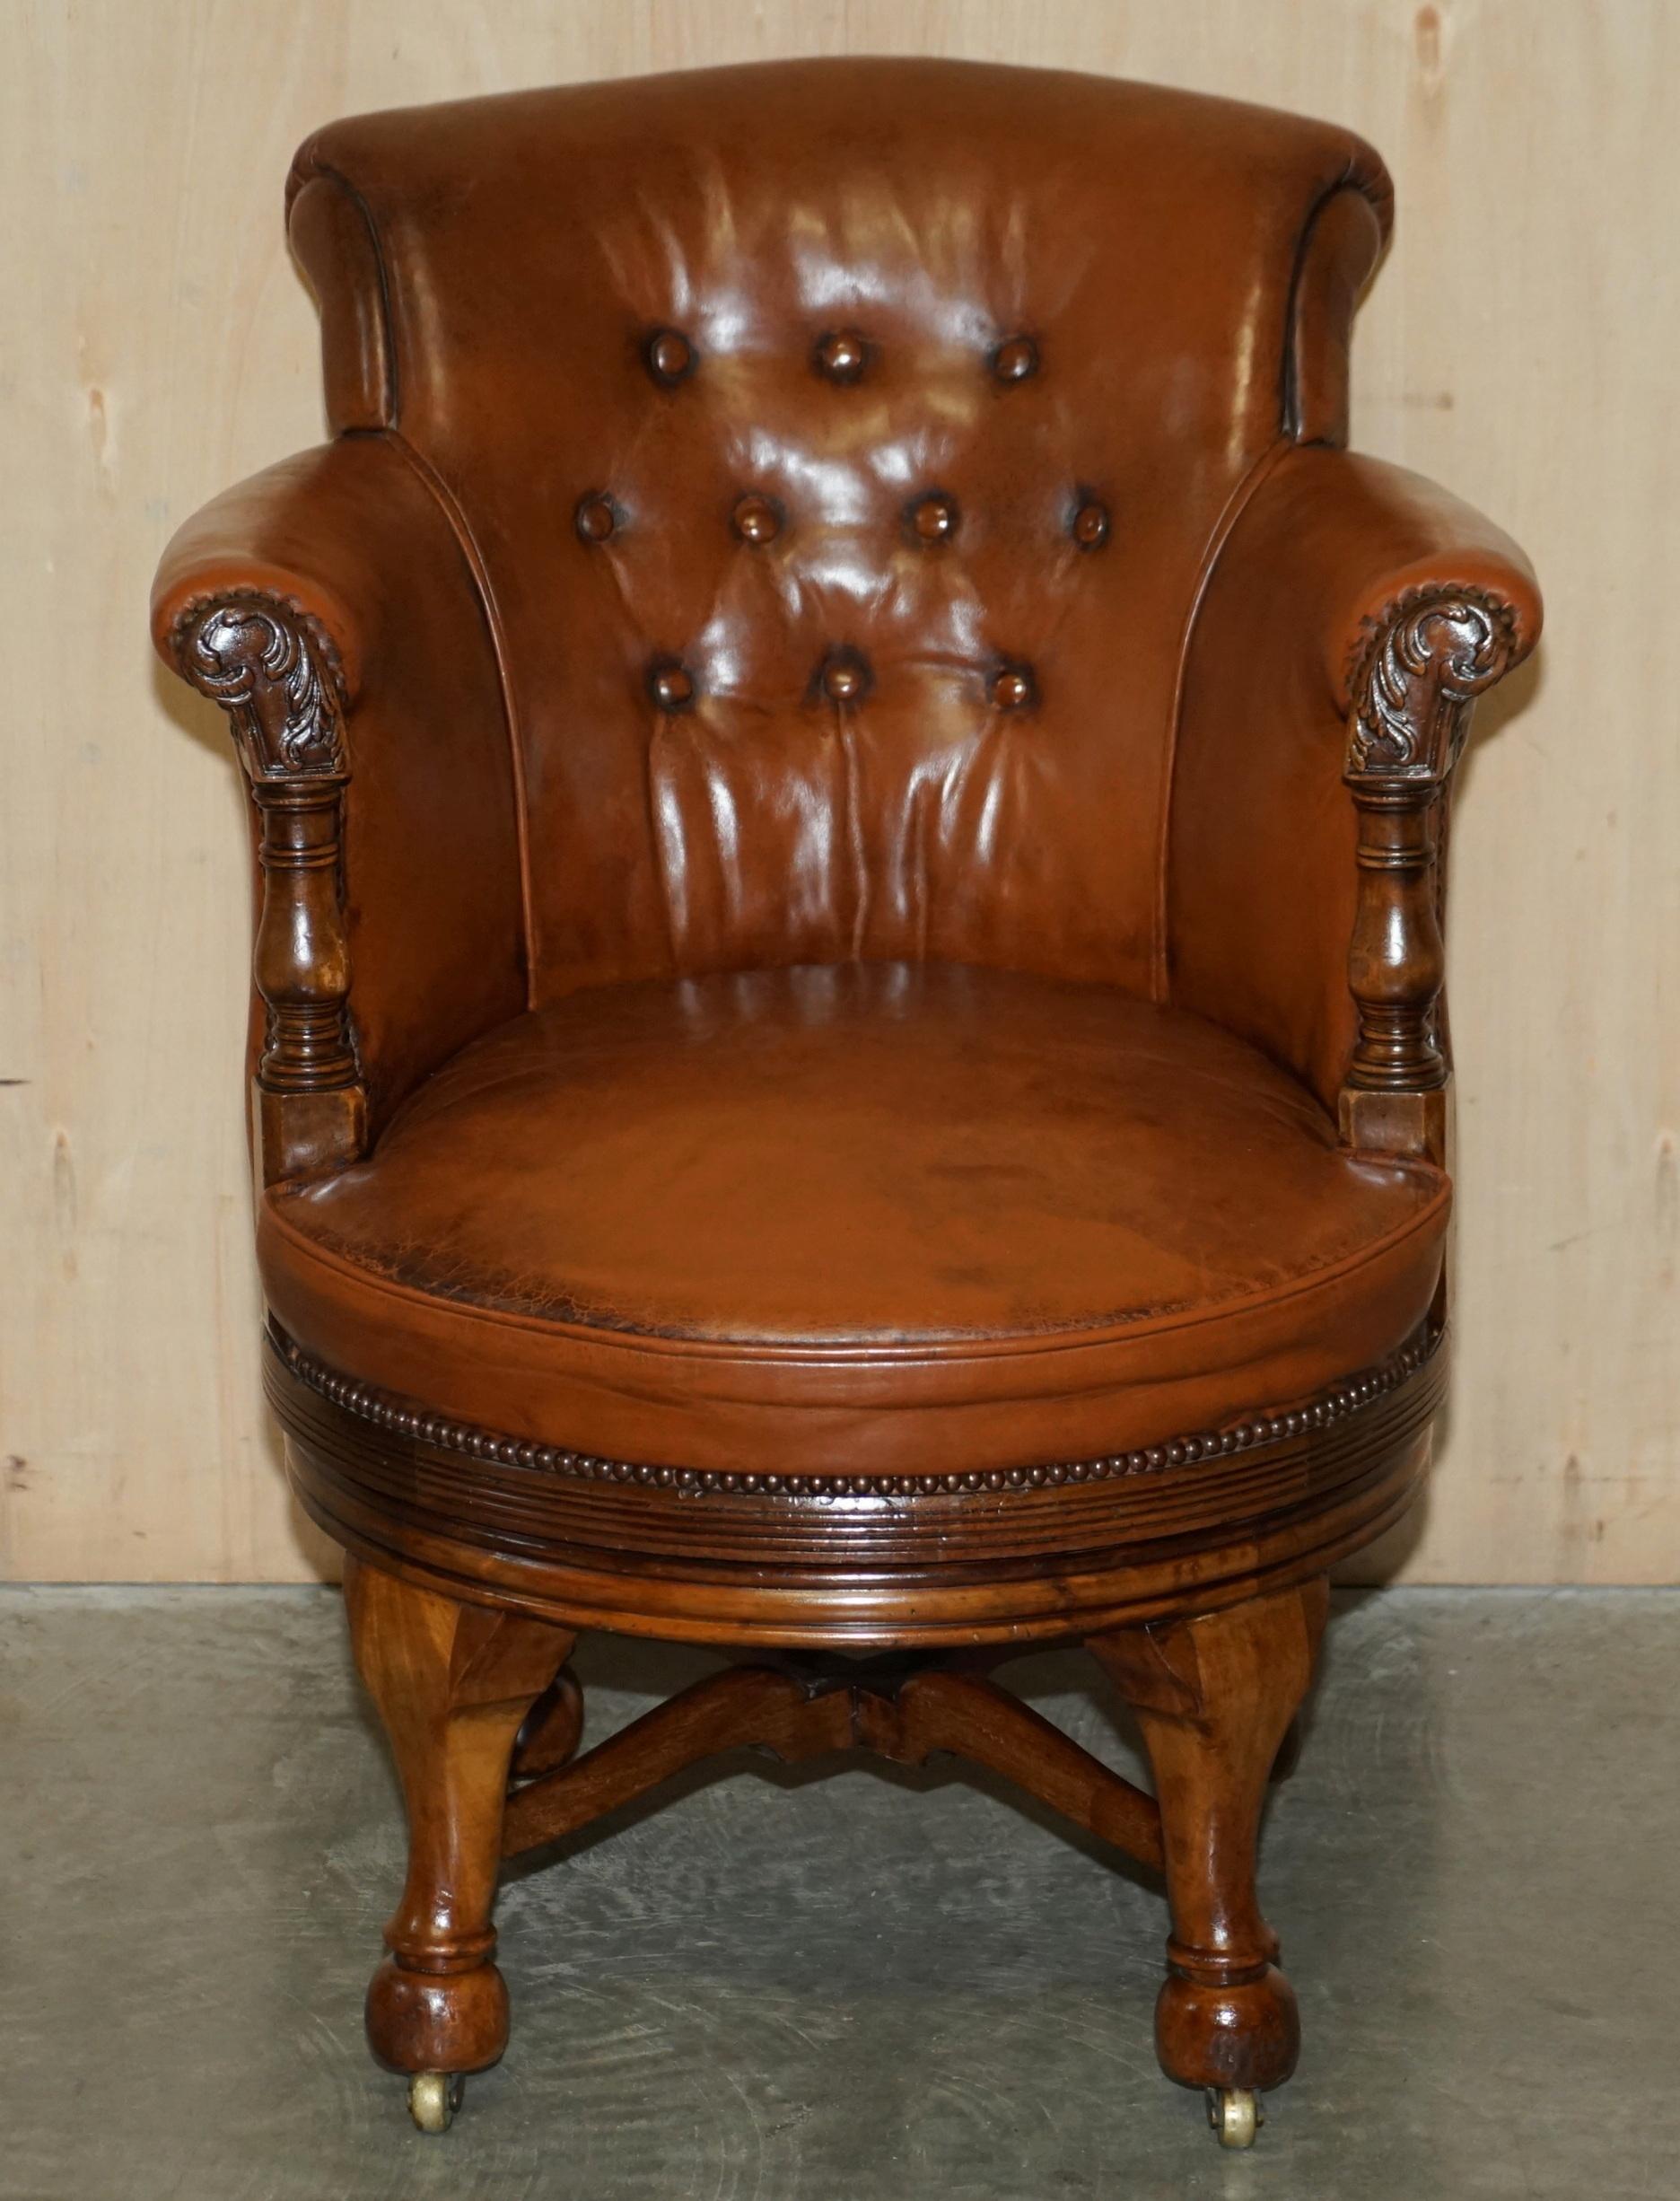 Wir freuen uns, diese seltene circa 1860 Barrell zurück Chesterfield Hand gefärbt braunem Leder Bürostuhl zum Verkauf anbieten.

Dieser Stuhl ist wirklich exquisit, er ist einer der ältesten Drehstühle, die ich je gesehen habe. Das Gestell ist aus